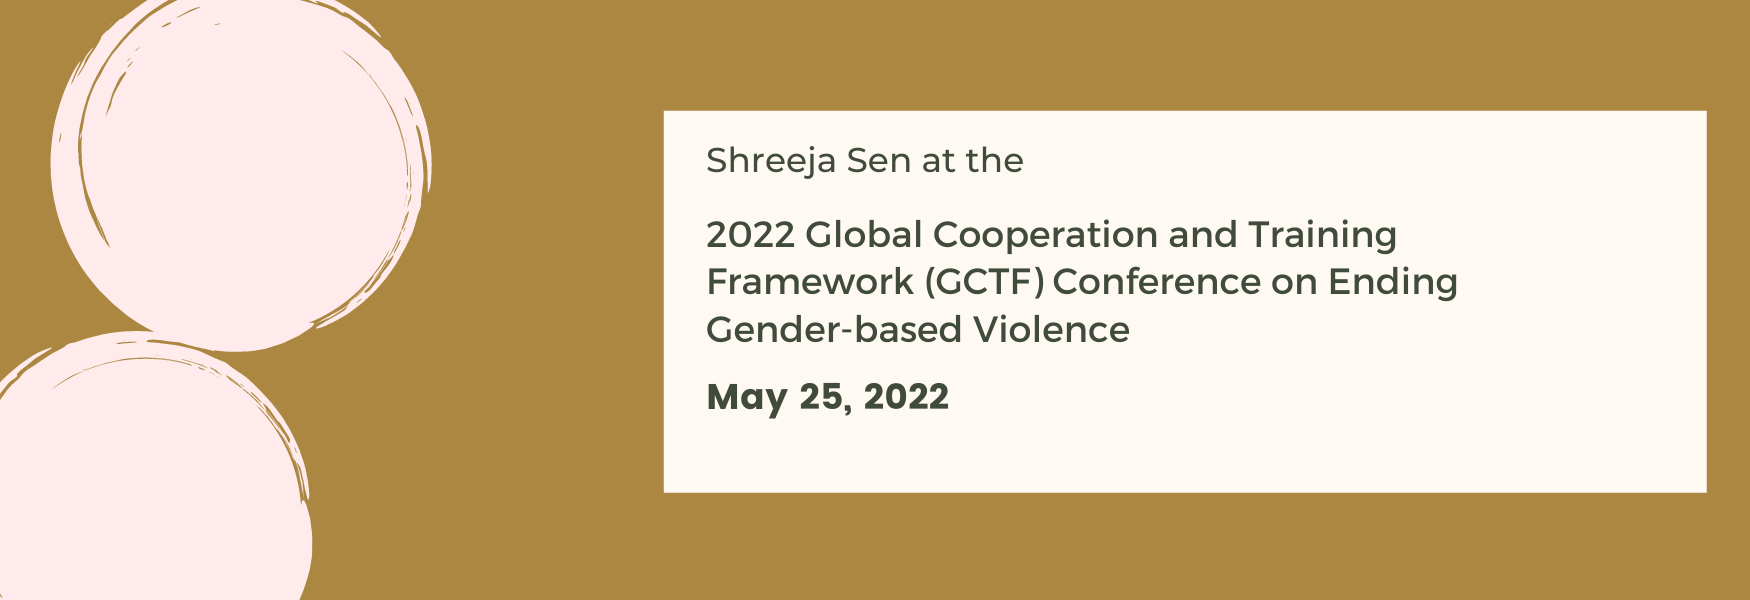 2022 Global Cooperation and Training Framework (GCTF) Conference on Ending Gender-based Violence 